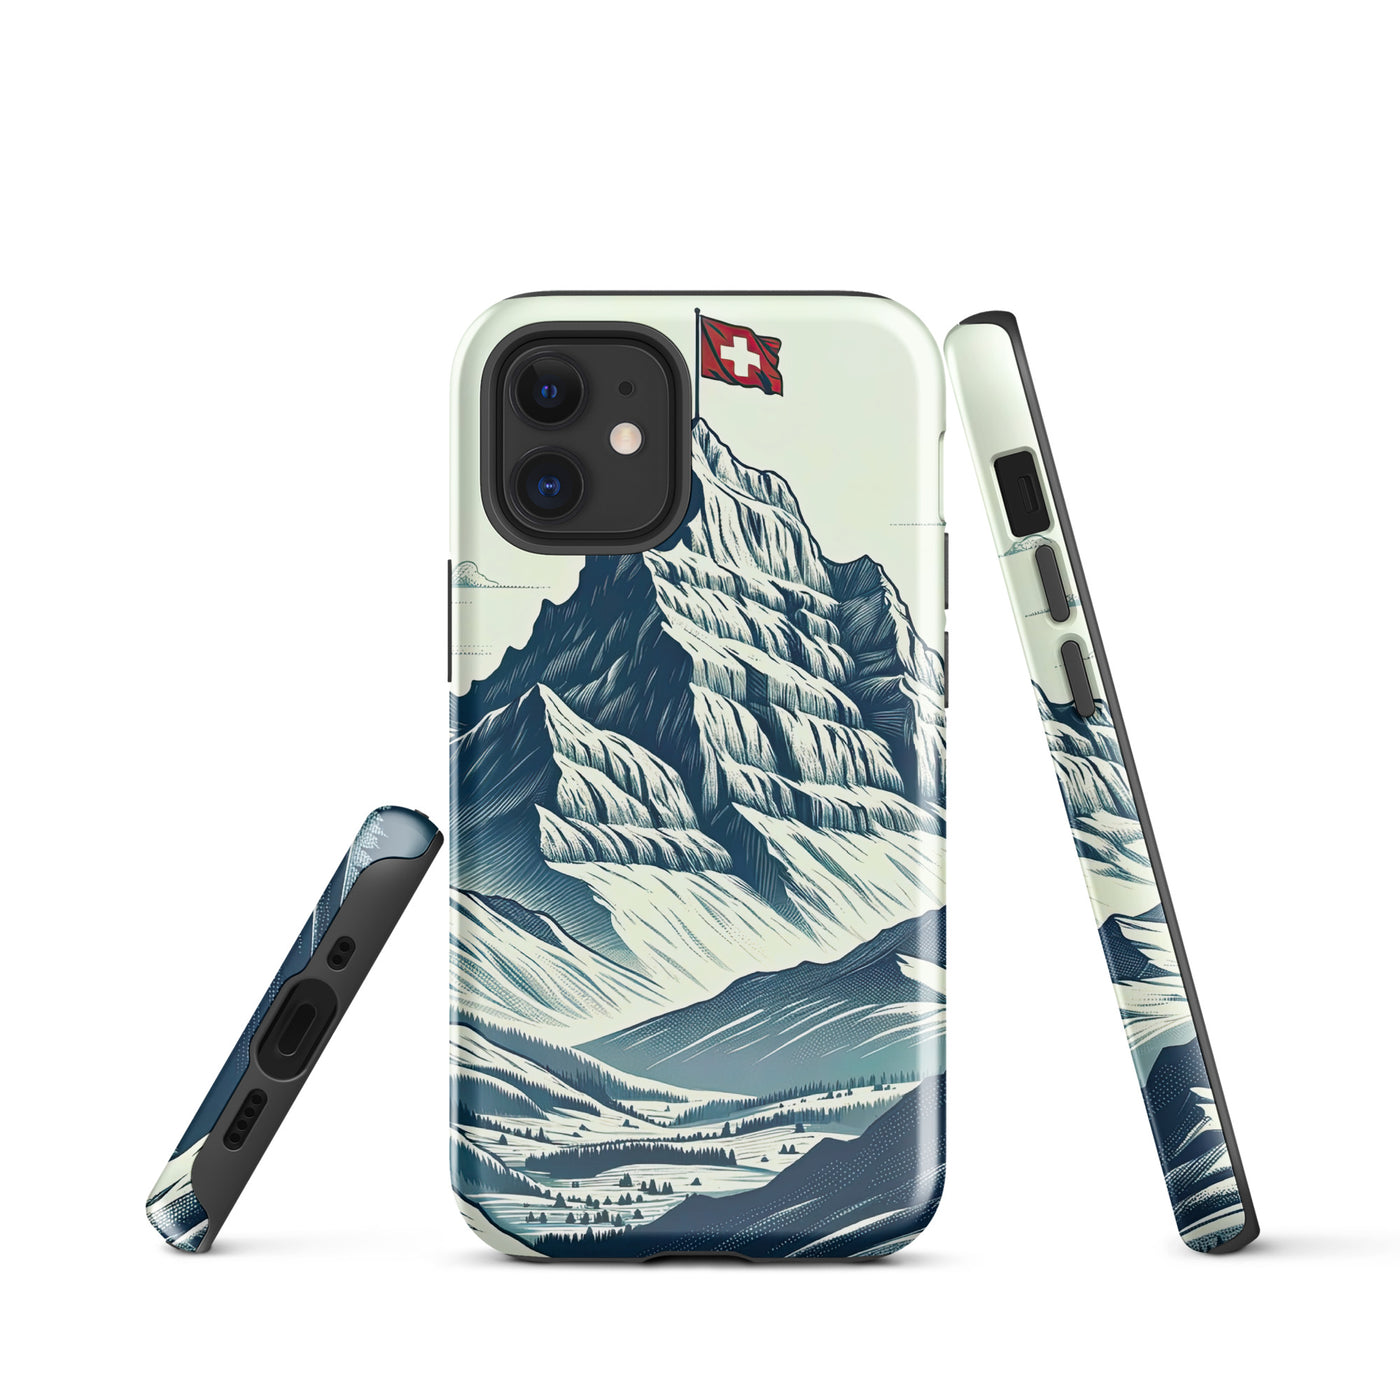 Ausgedehnte Bergkette mit dominierendem Gipfel und wehender Schweizer Flagge - iPhone Schutzhülle (robust) berge xxx yyy zzz iPhone 12 mini